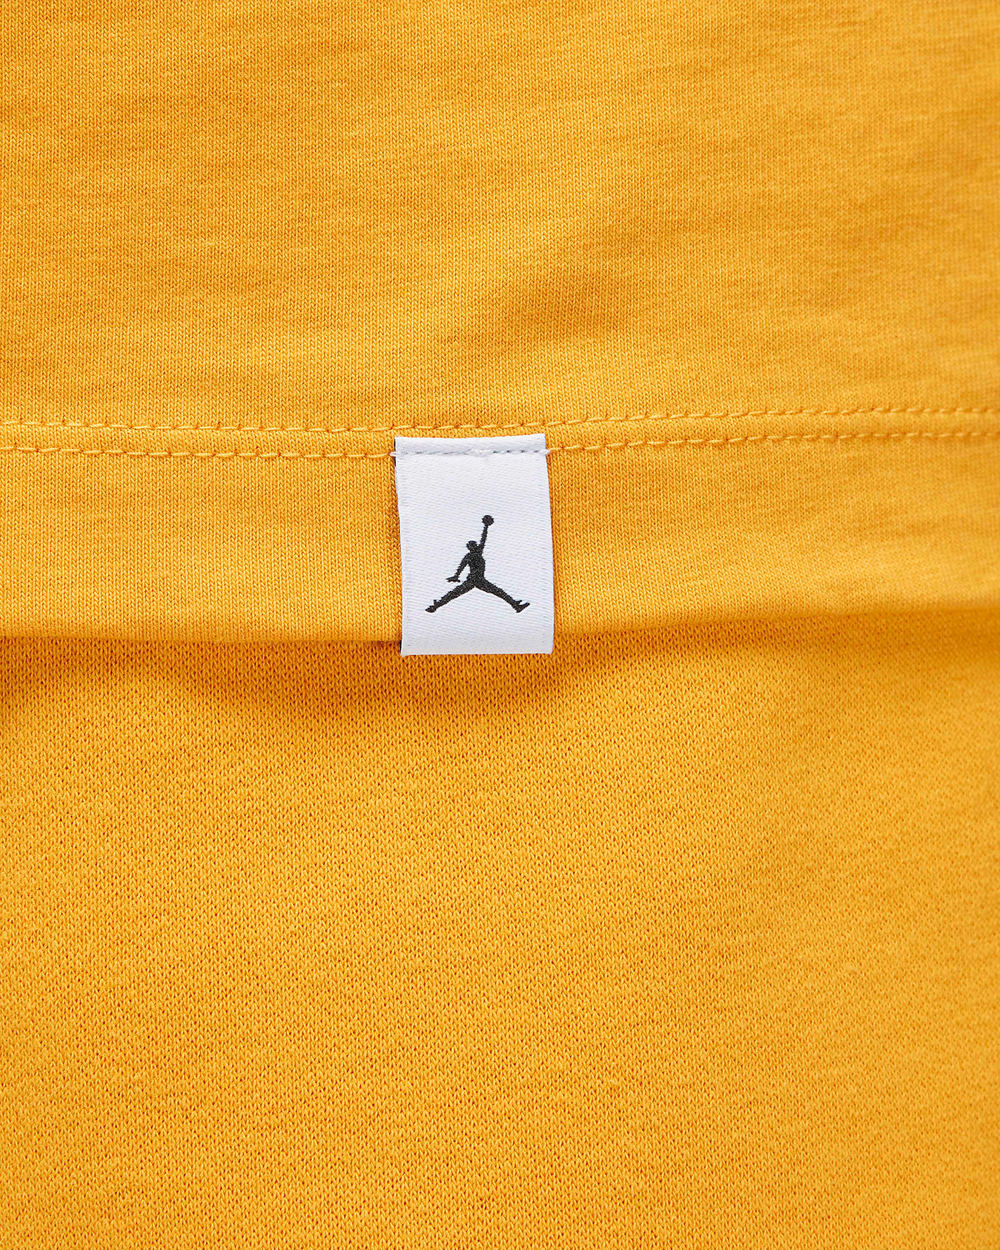 Air Jordan 6 Yellow Ochre Matching Shirt